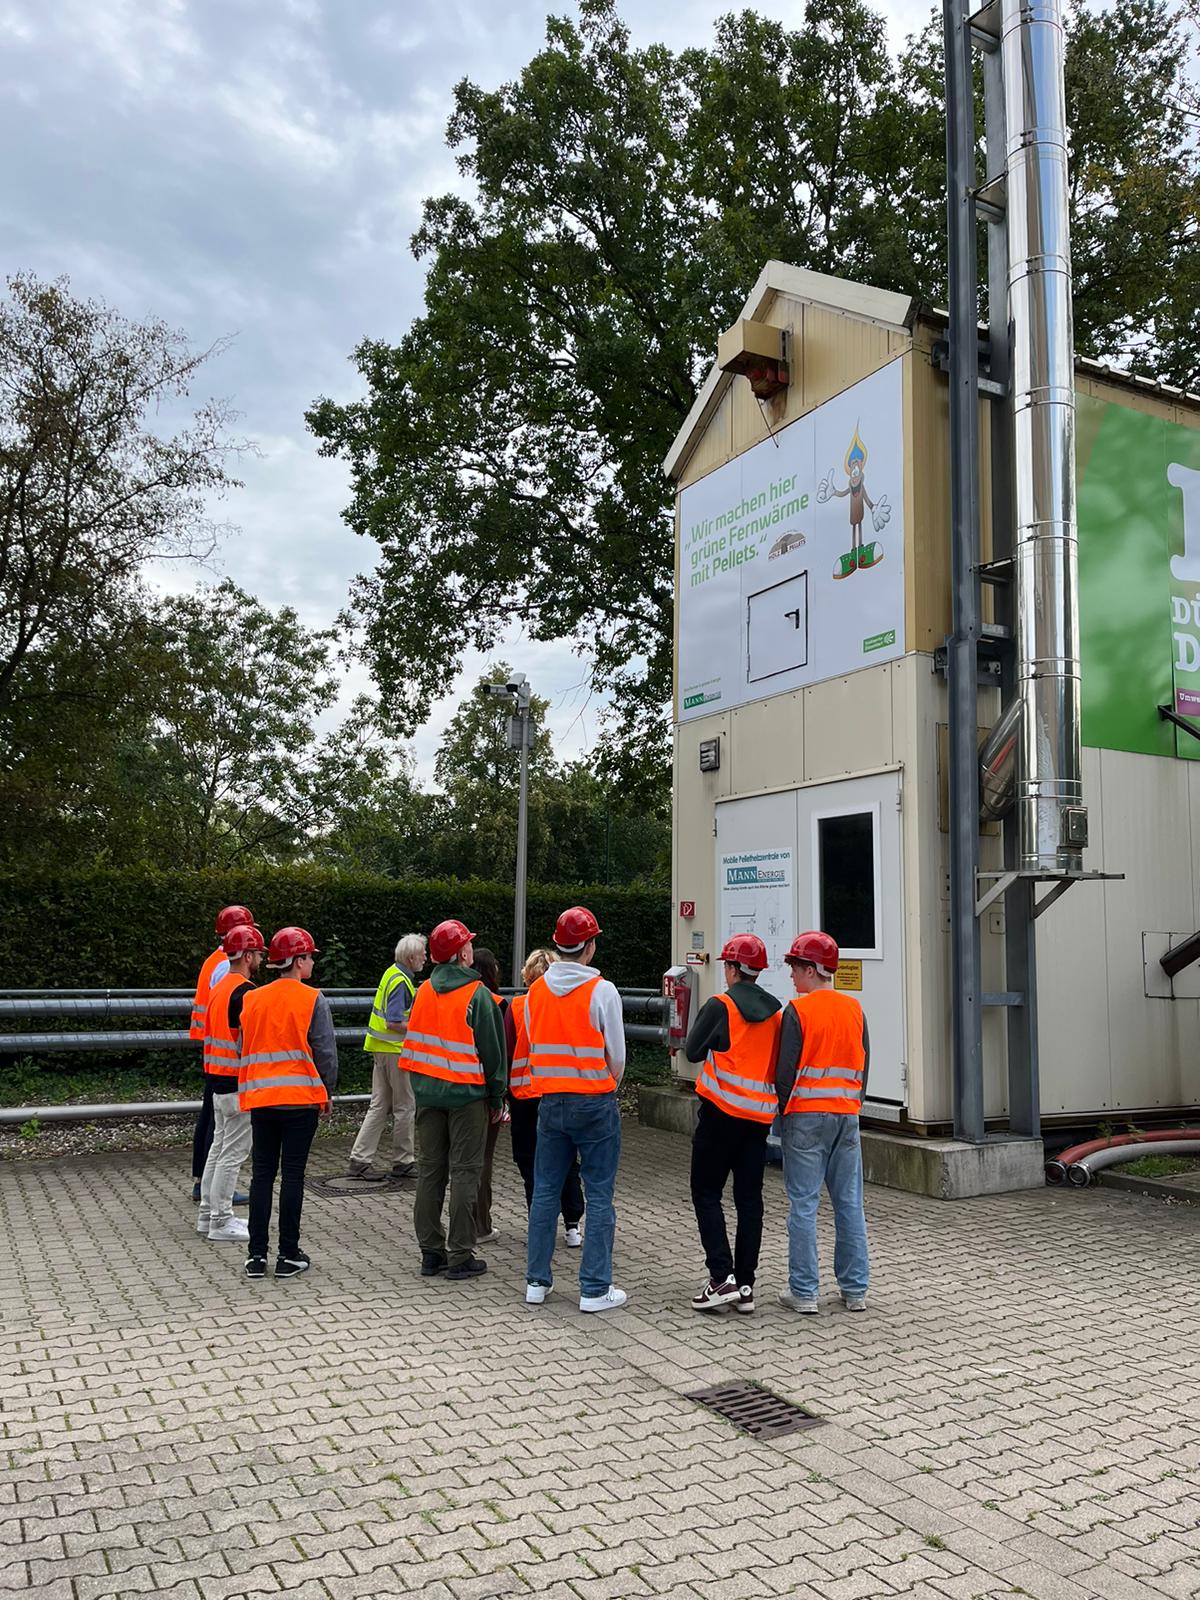 Man sieht die Schüler:innengruppe auf dem Gelände des  Biomasseheizkraftwerks in Düsseldorf Garath.